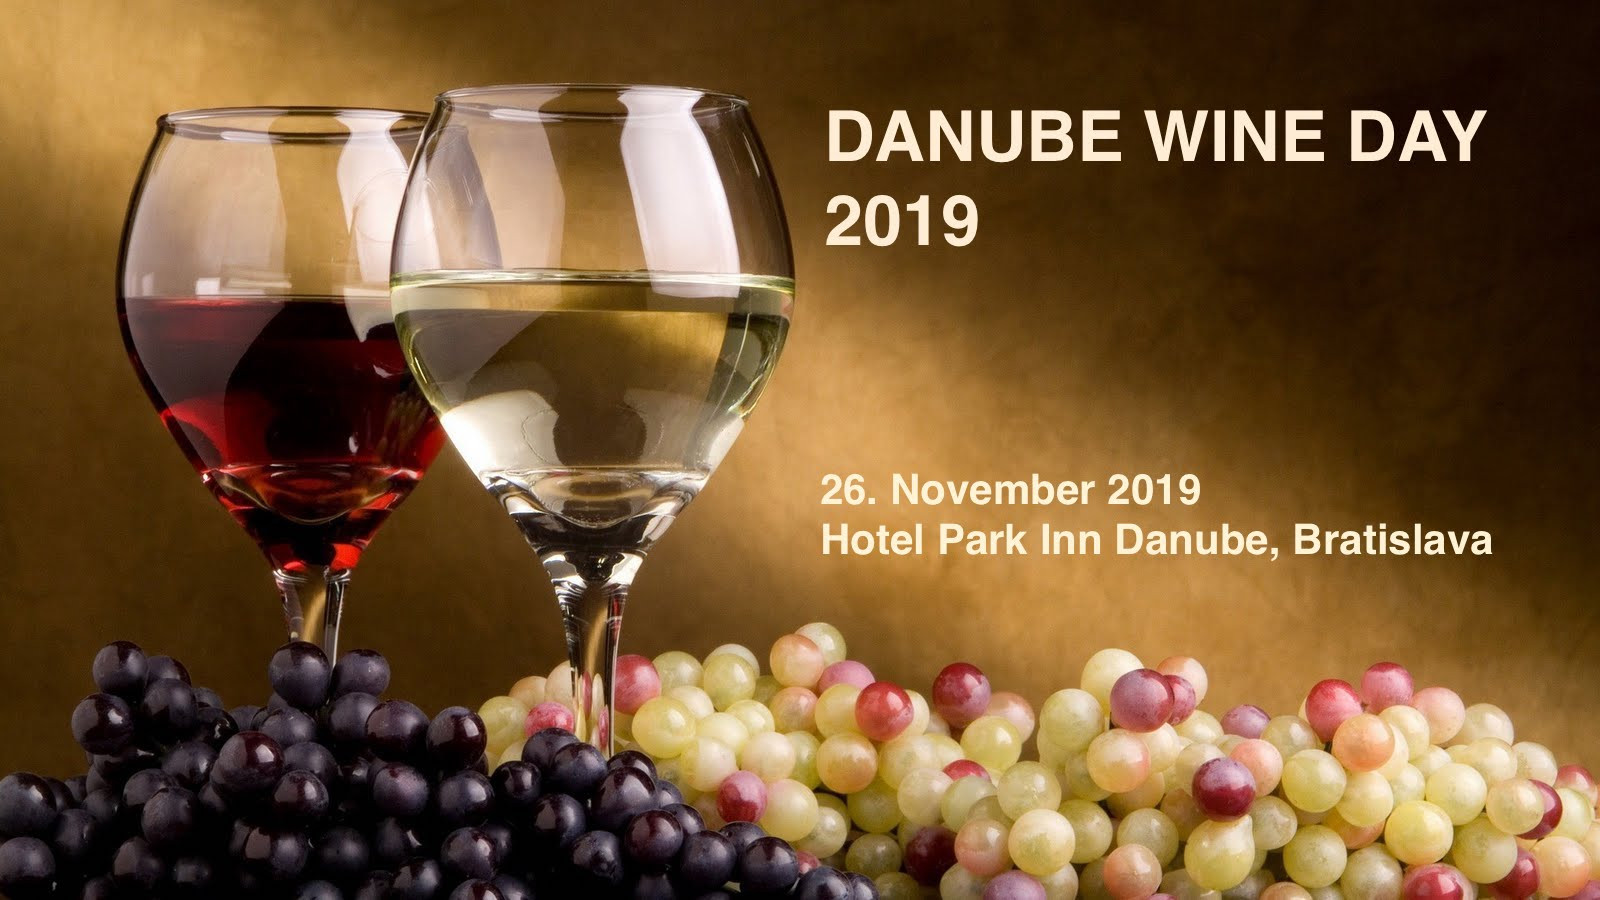 Deň dunajských vín 2019 (26.11.2019)